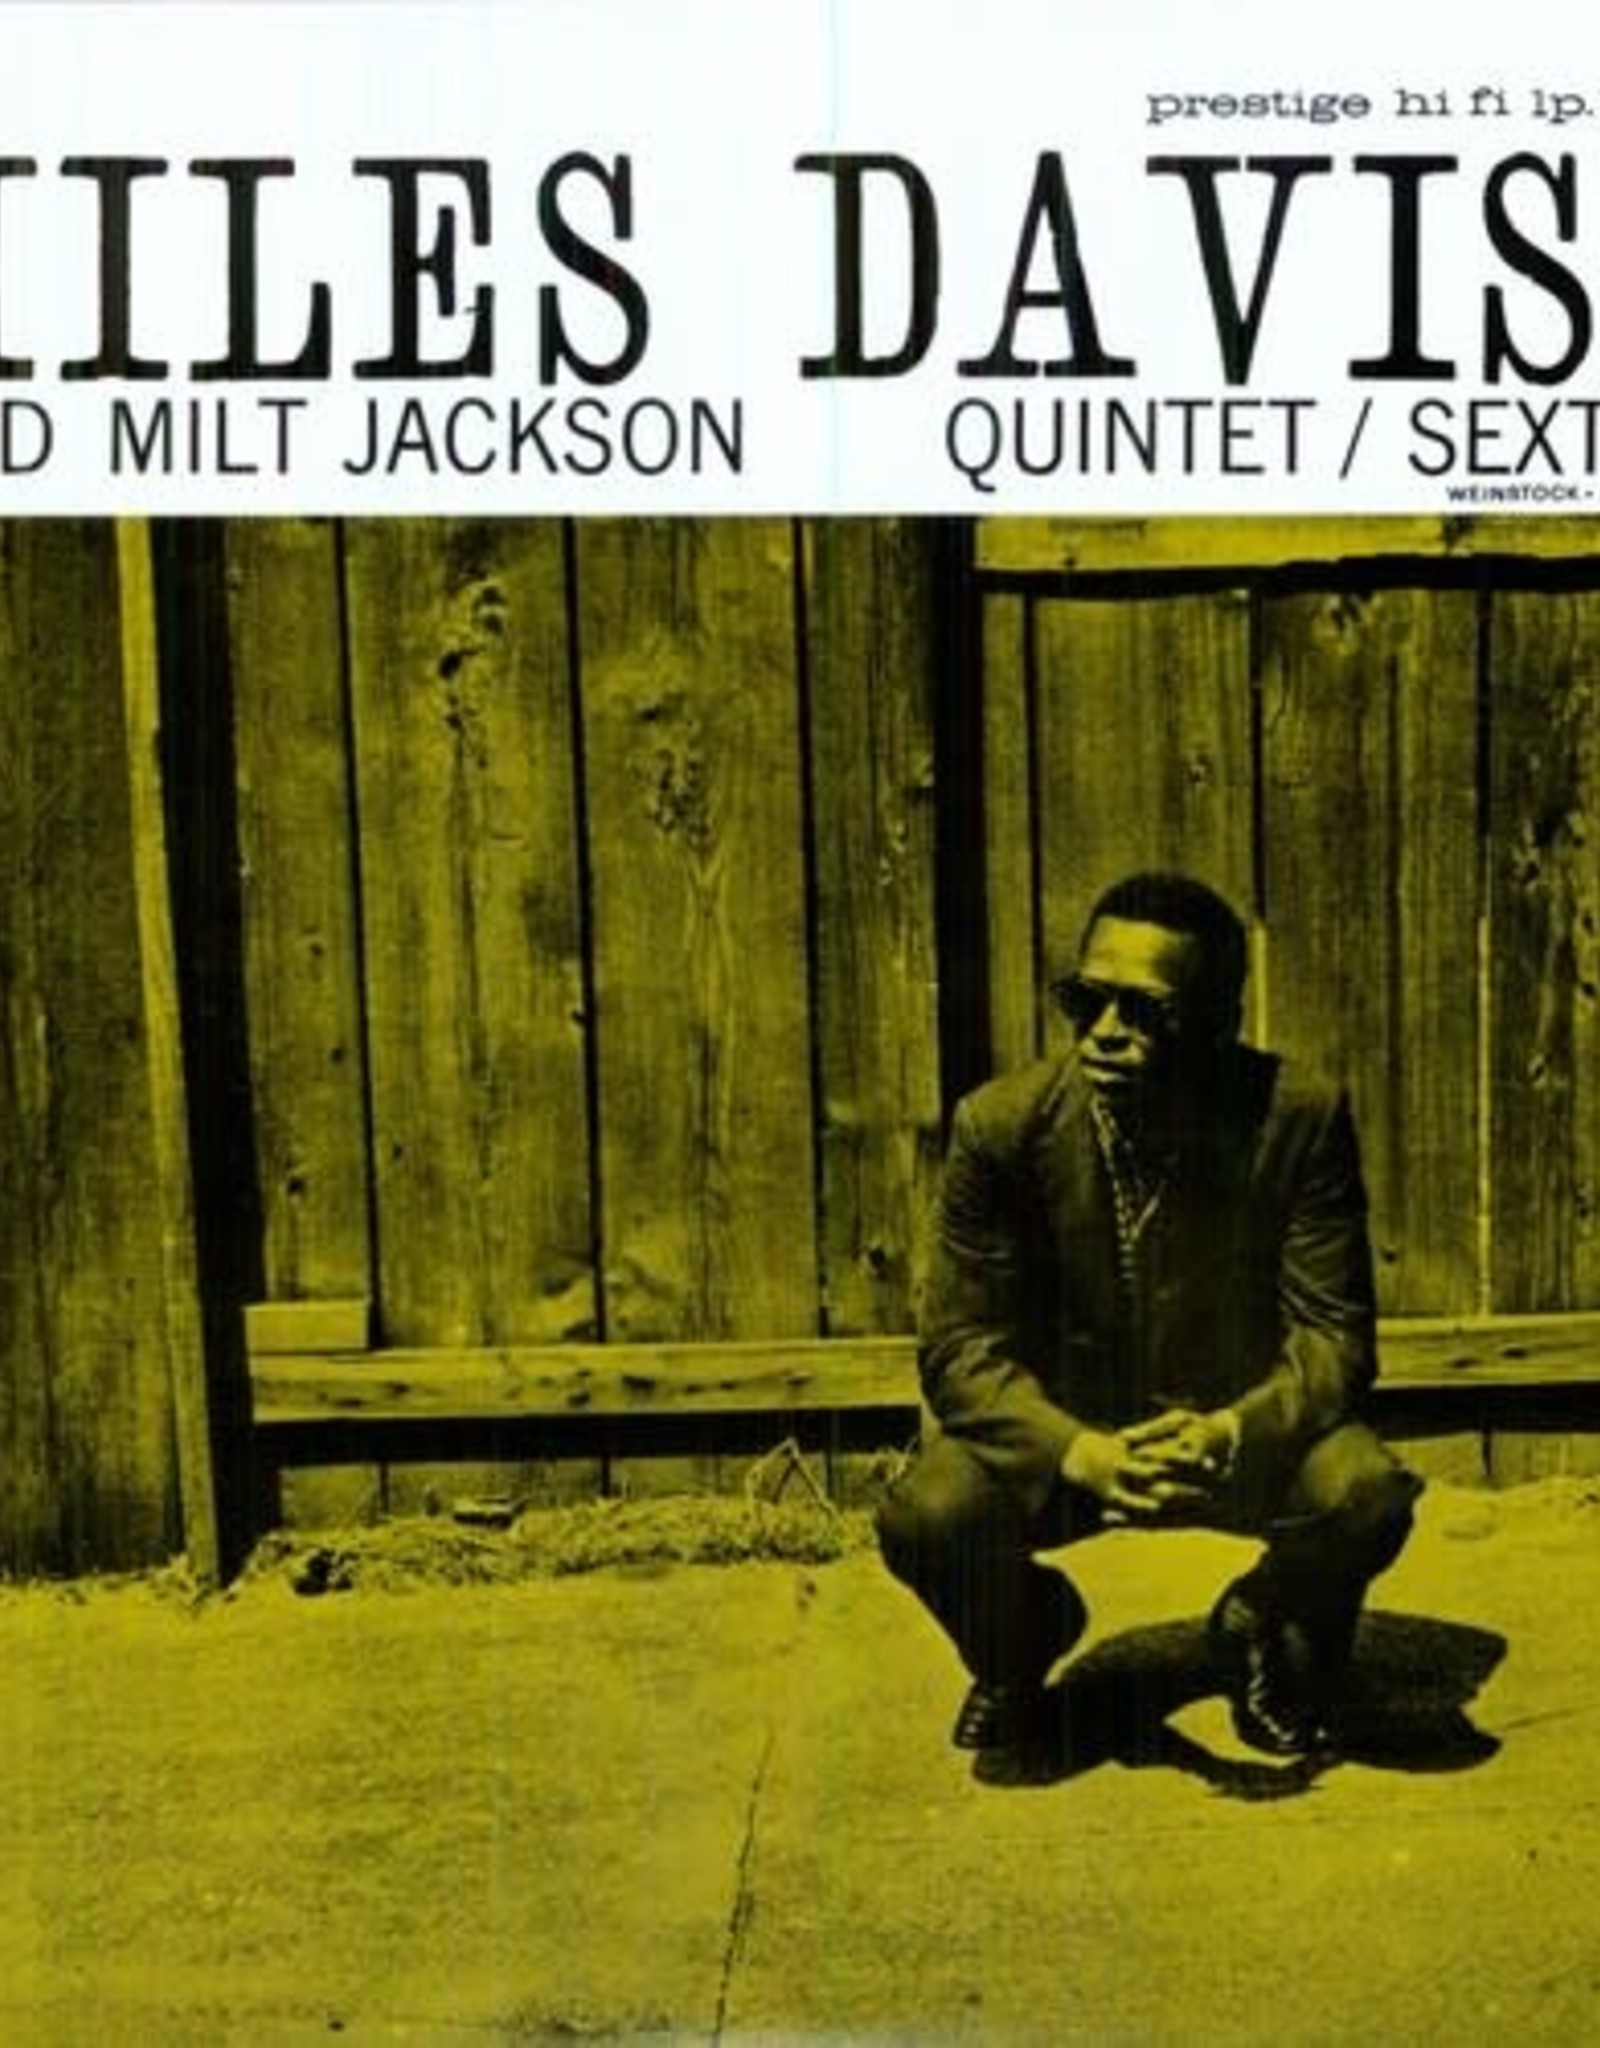 Miles Davis - Quintet/Sextet